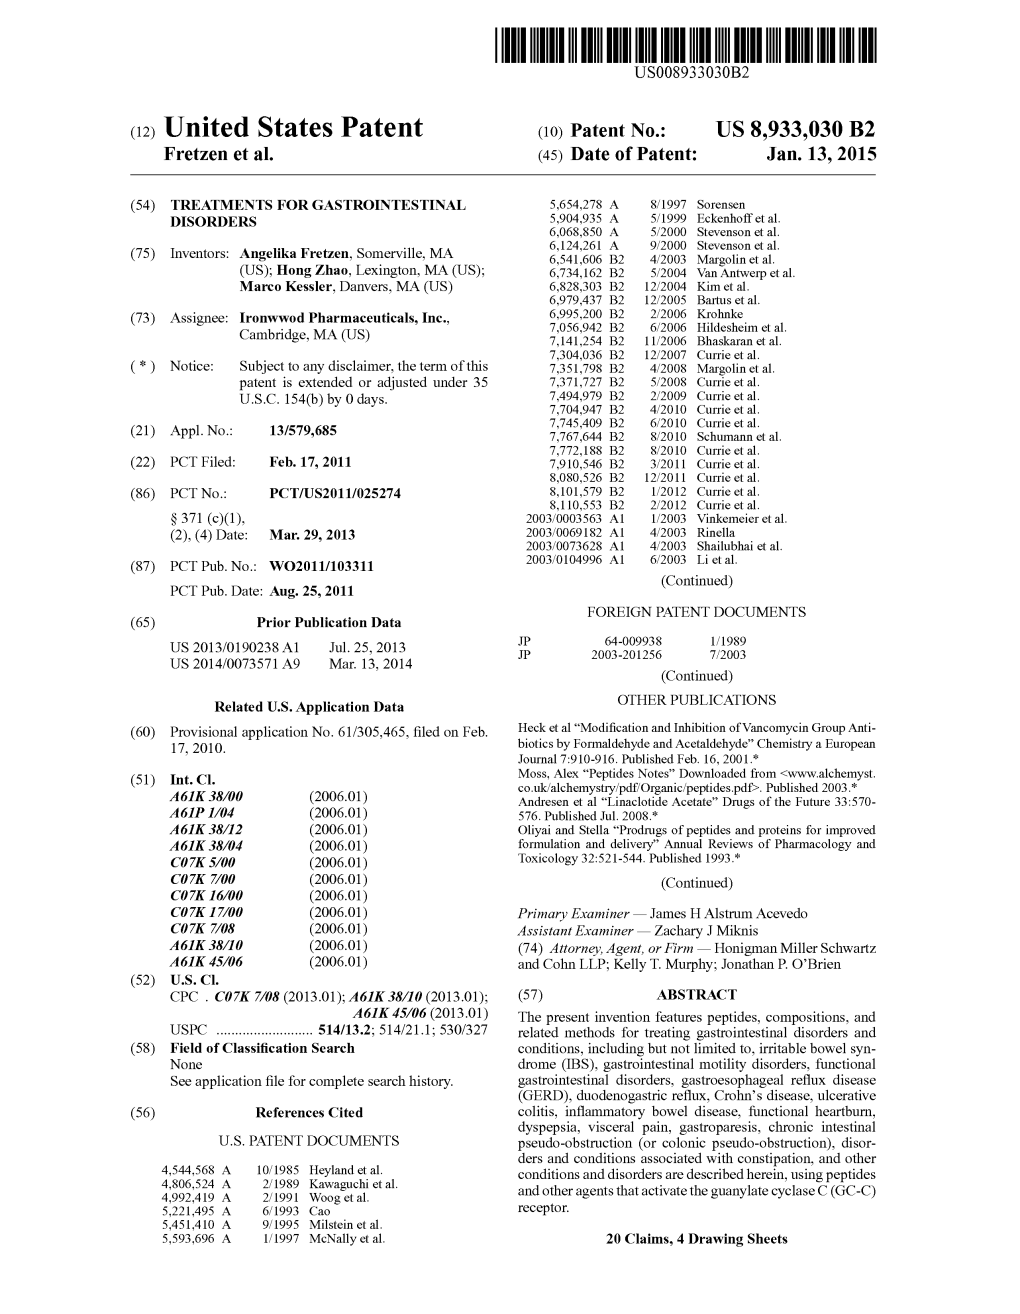 (12) United States Patent (10) Patent No.: US 8,933,030 B2 Fretzen Et Al